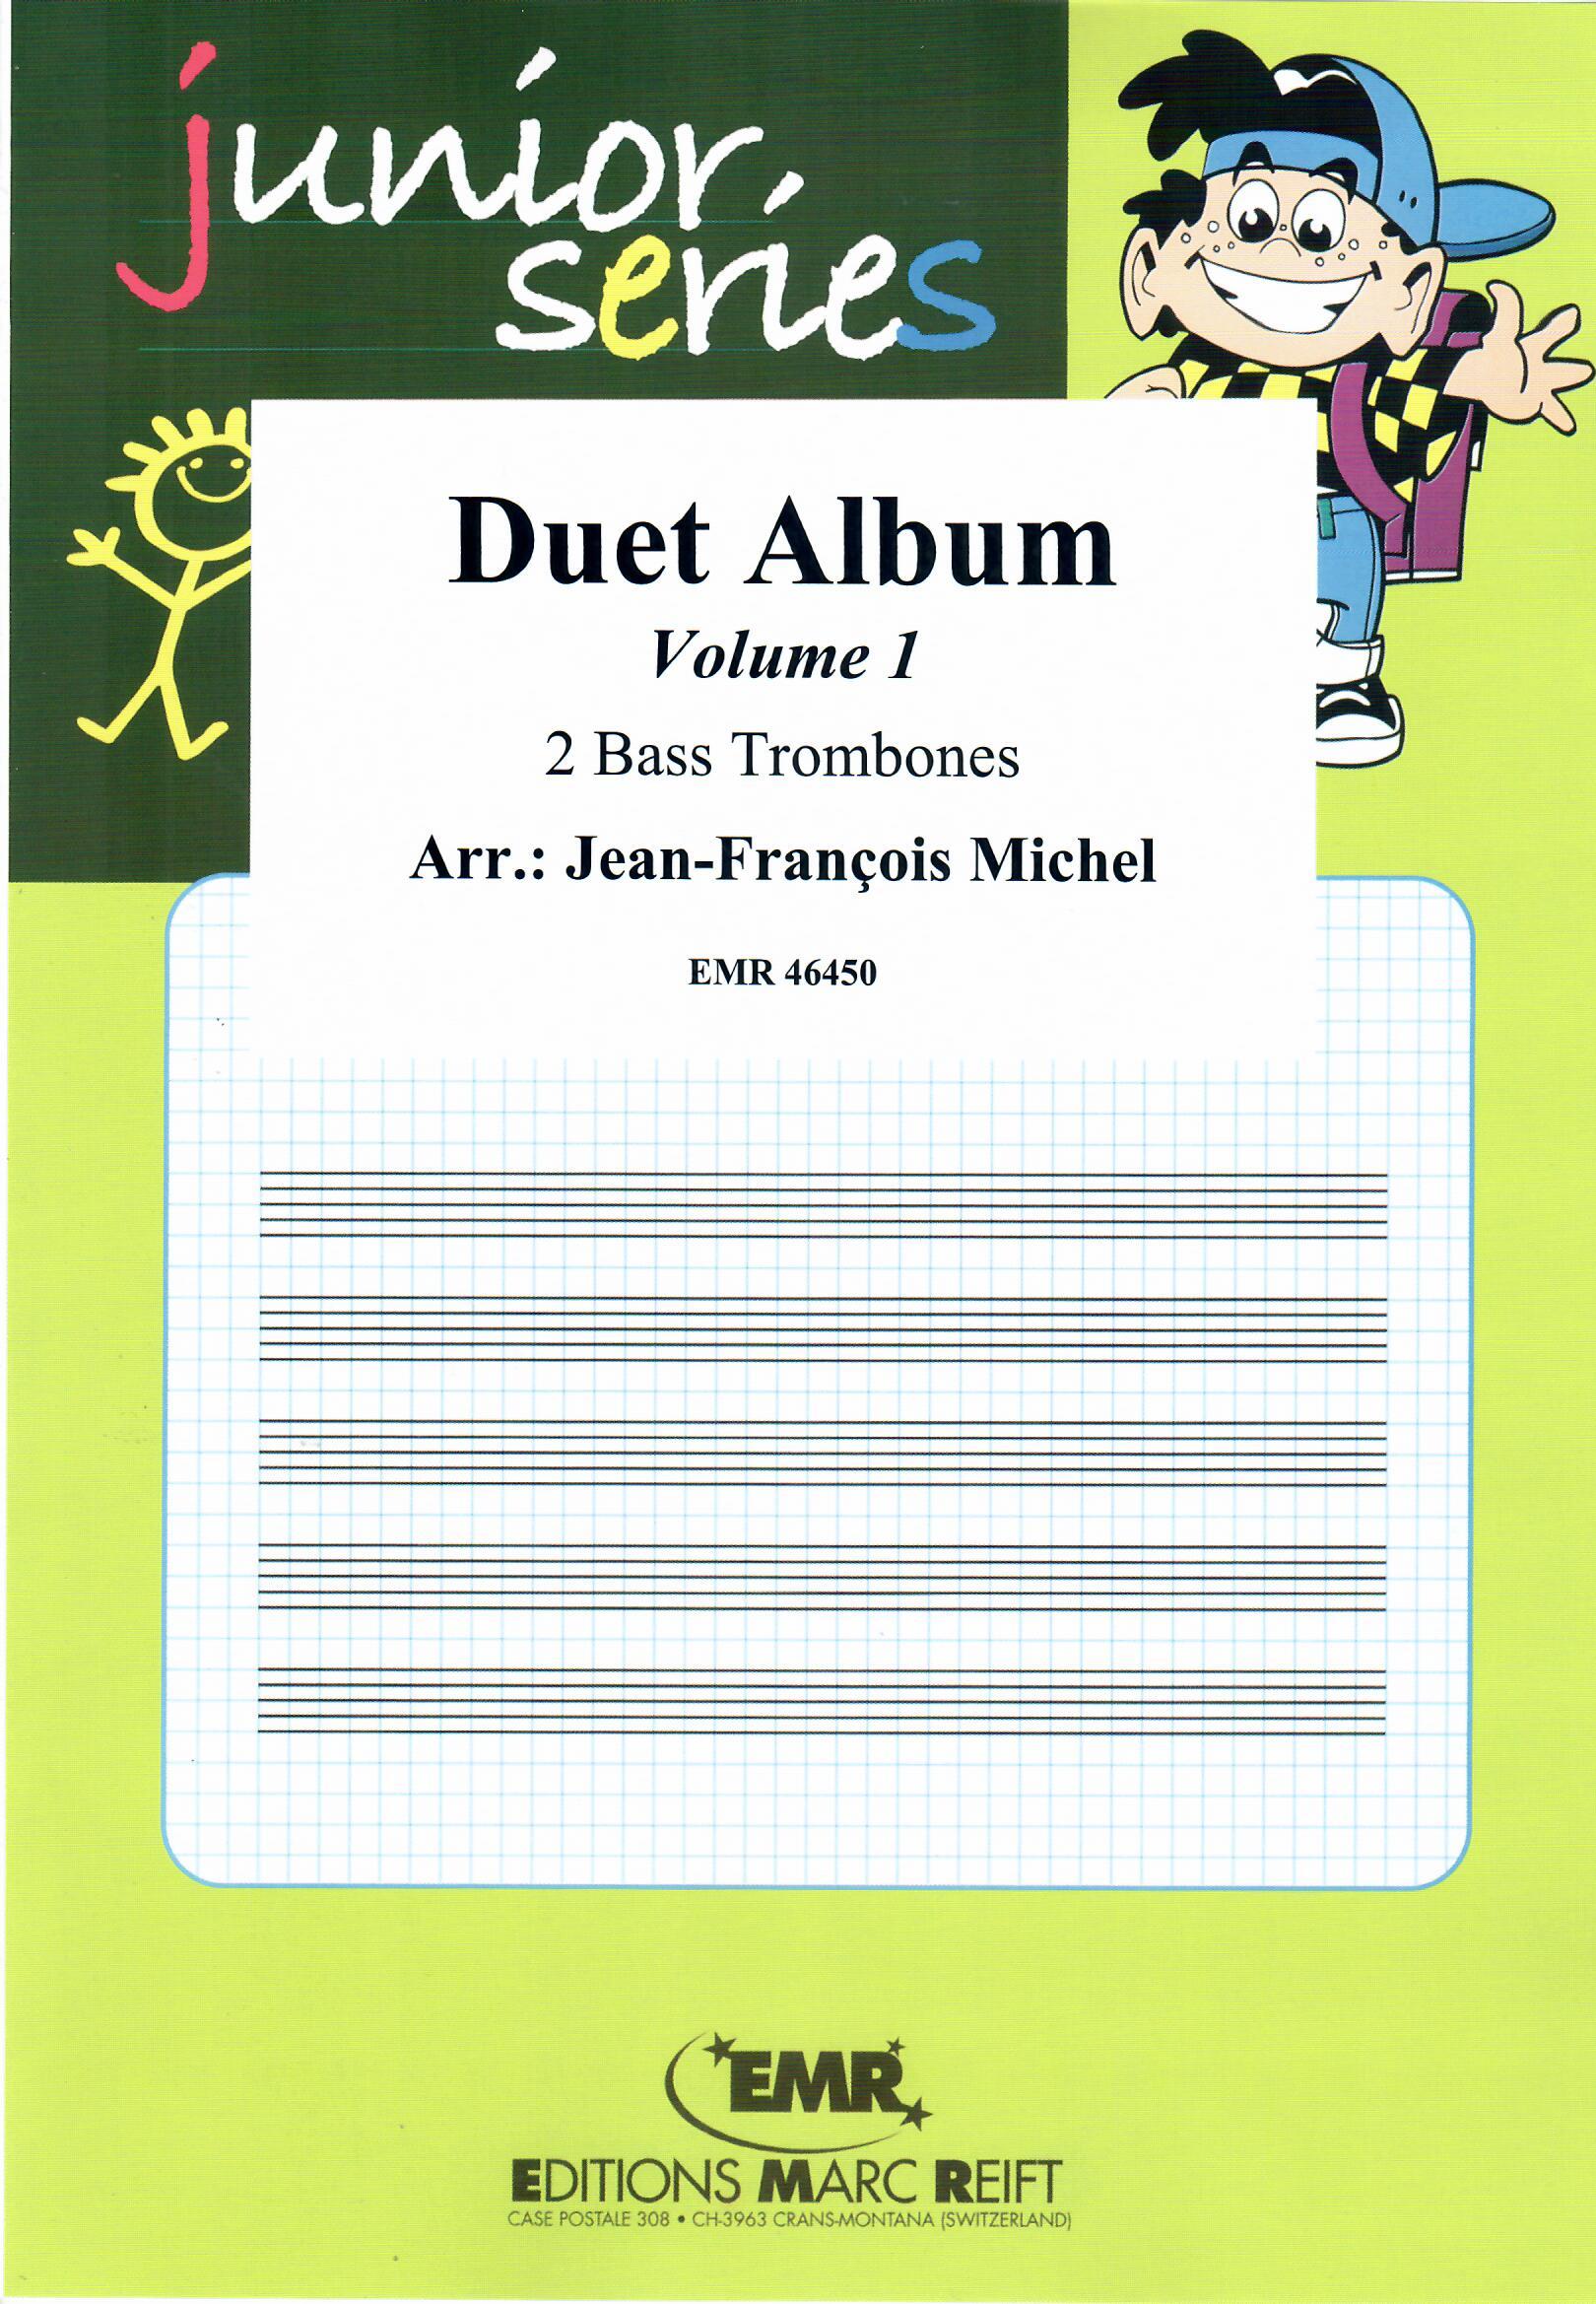 DUET ALBUM VOL. 1 - Bass Trombone Duet